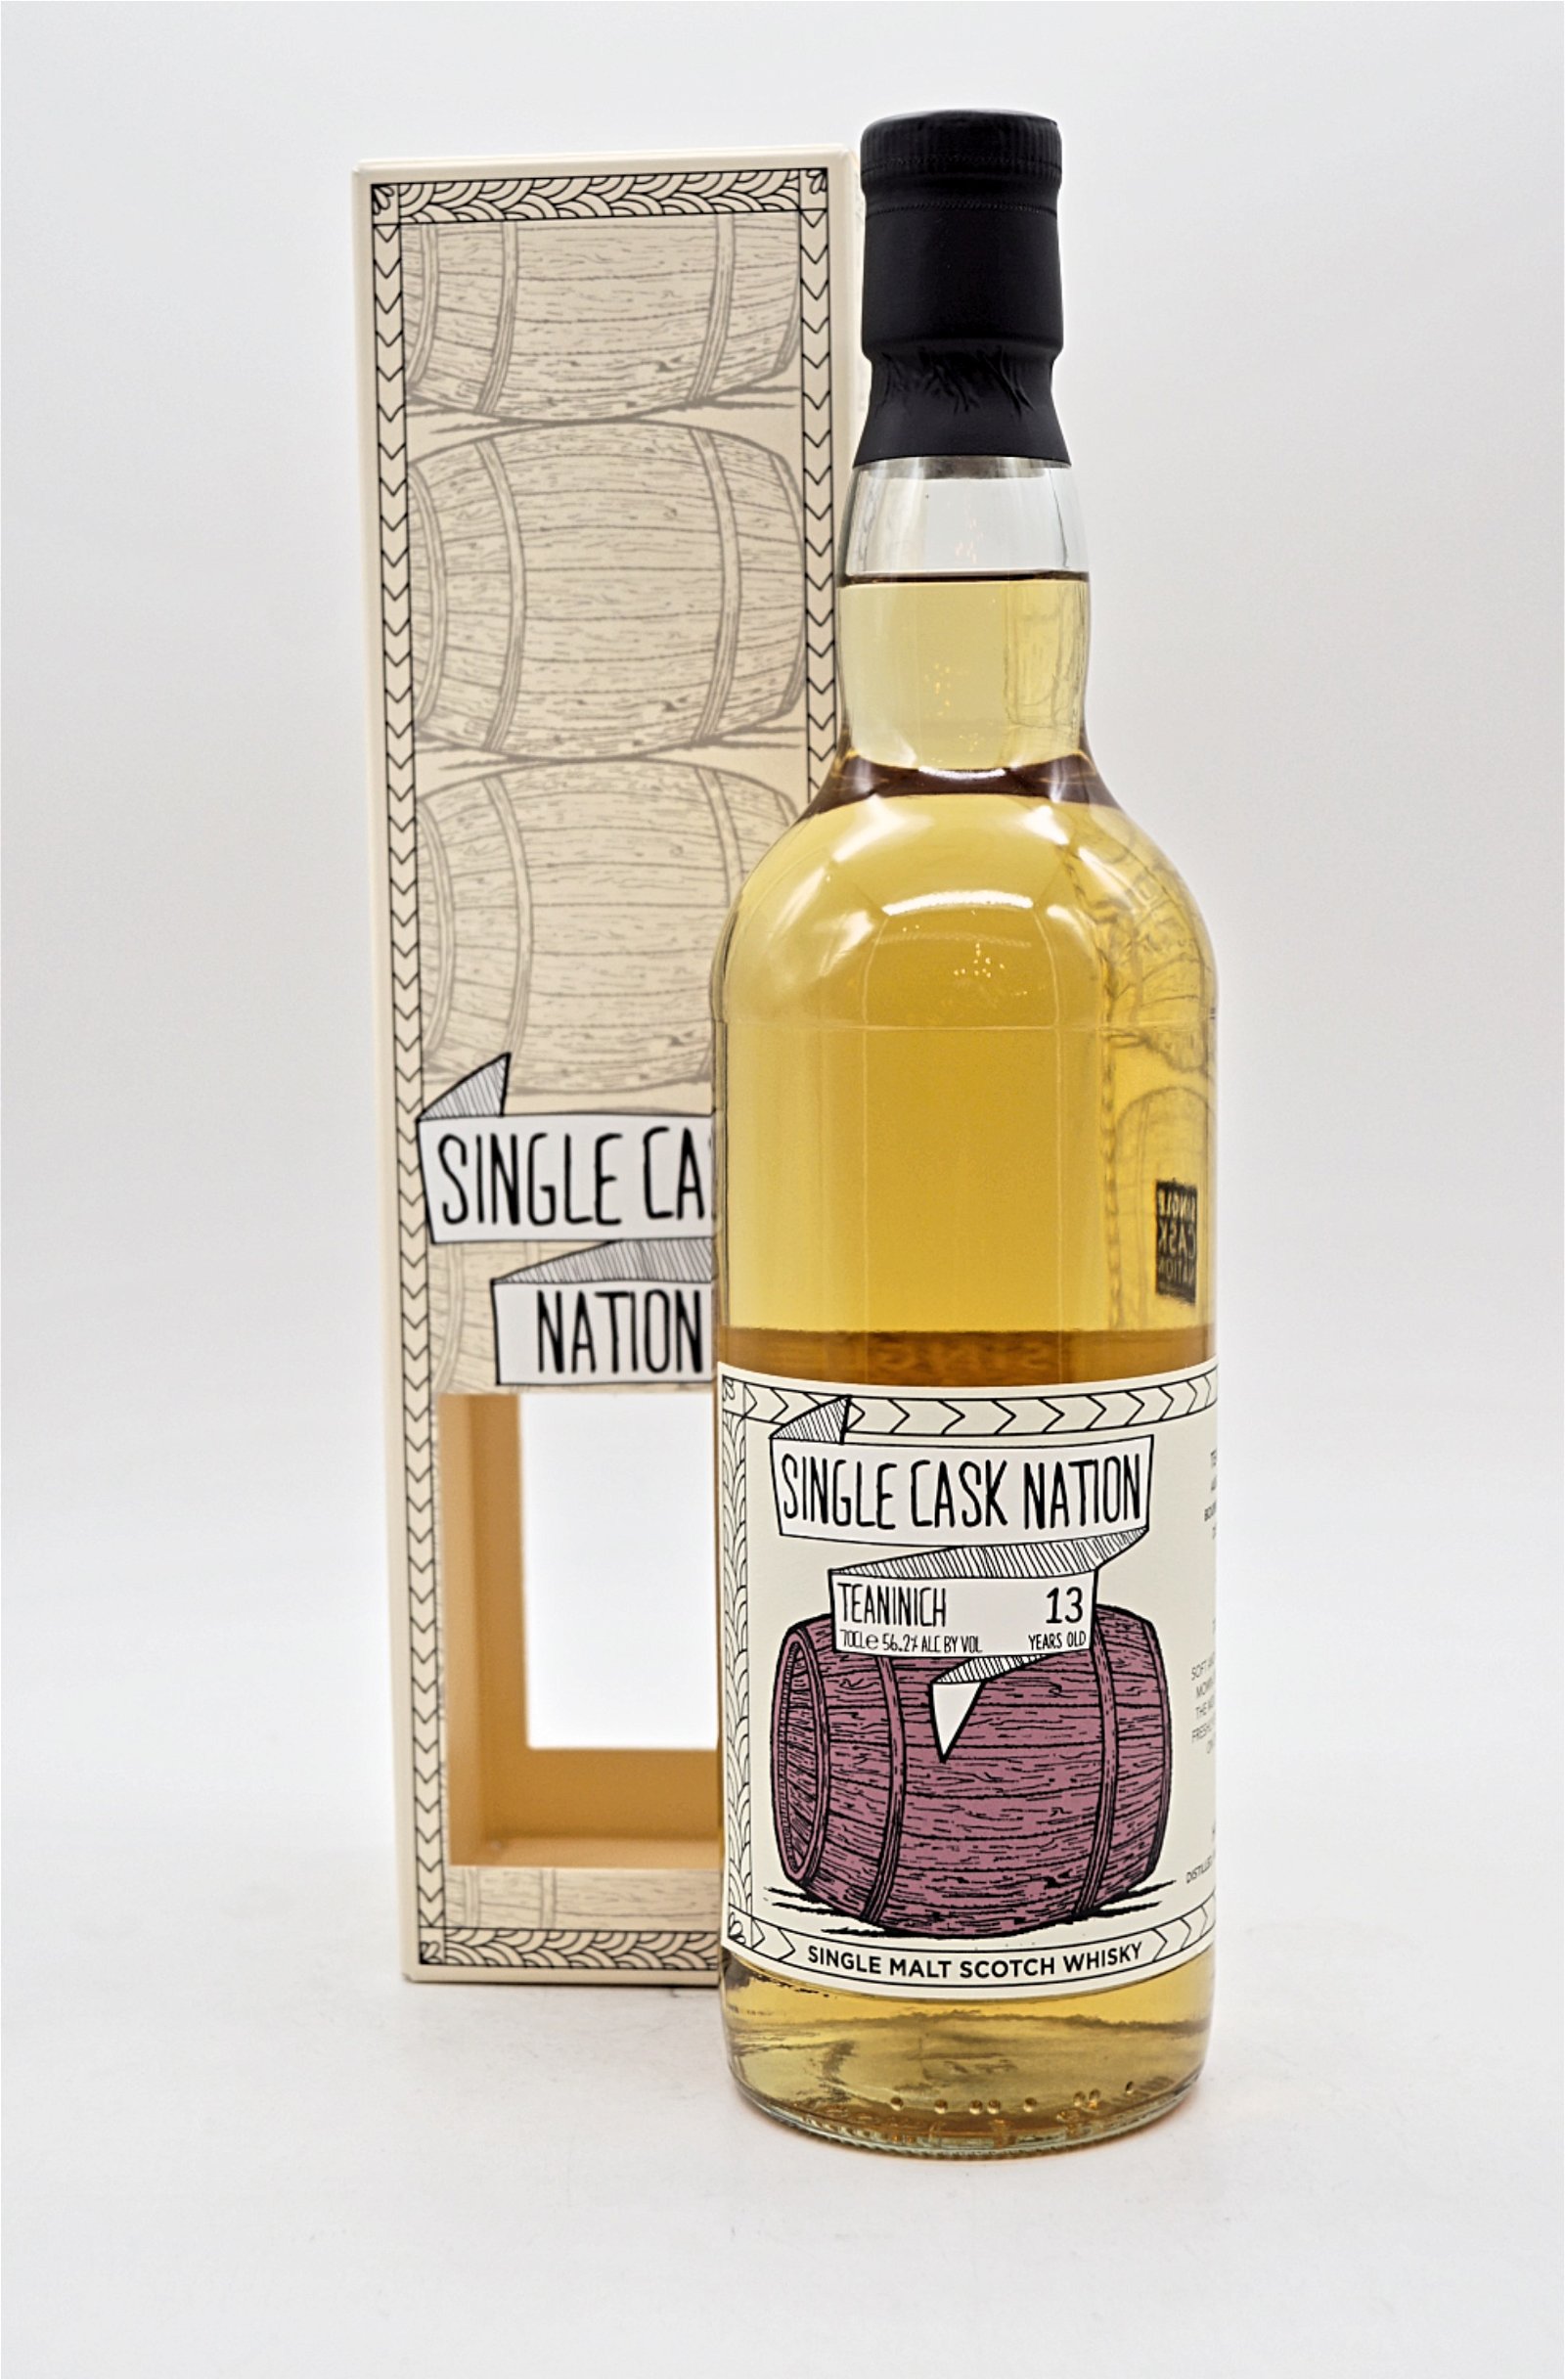 Single Cask Nation 13 Jahre Teaninich Cask #487 Single Malt Scotch Whisky